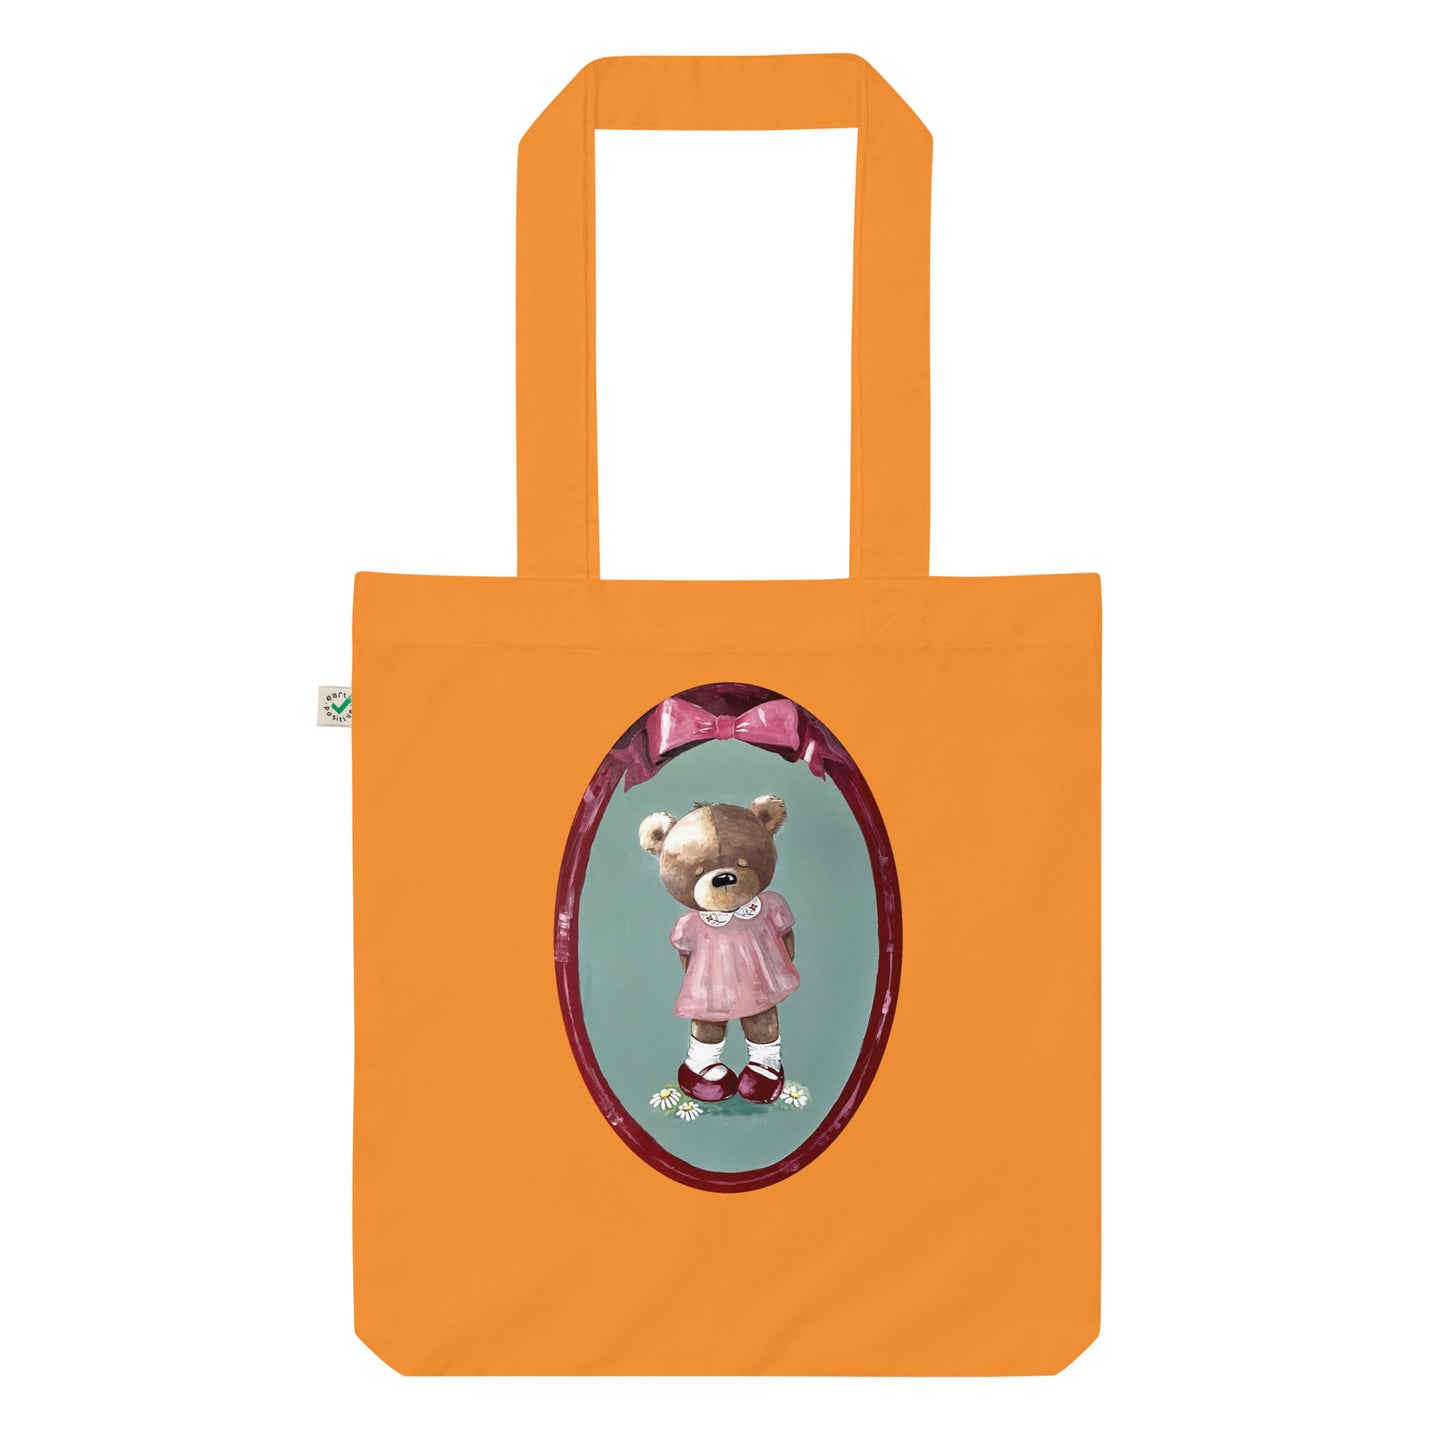 Bear Girl Tote Bag